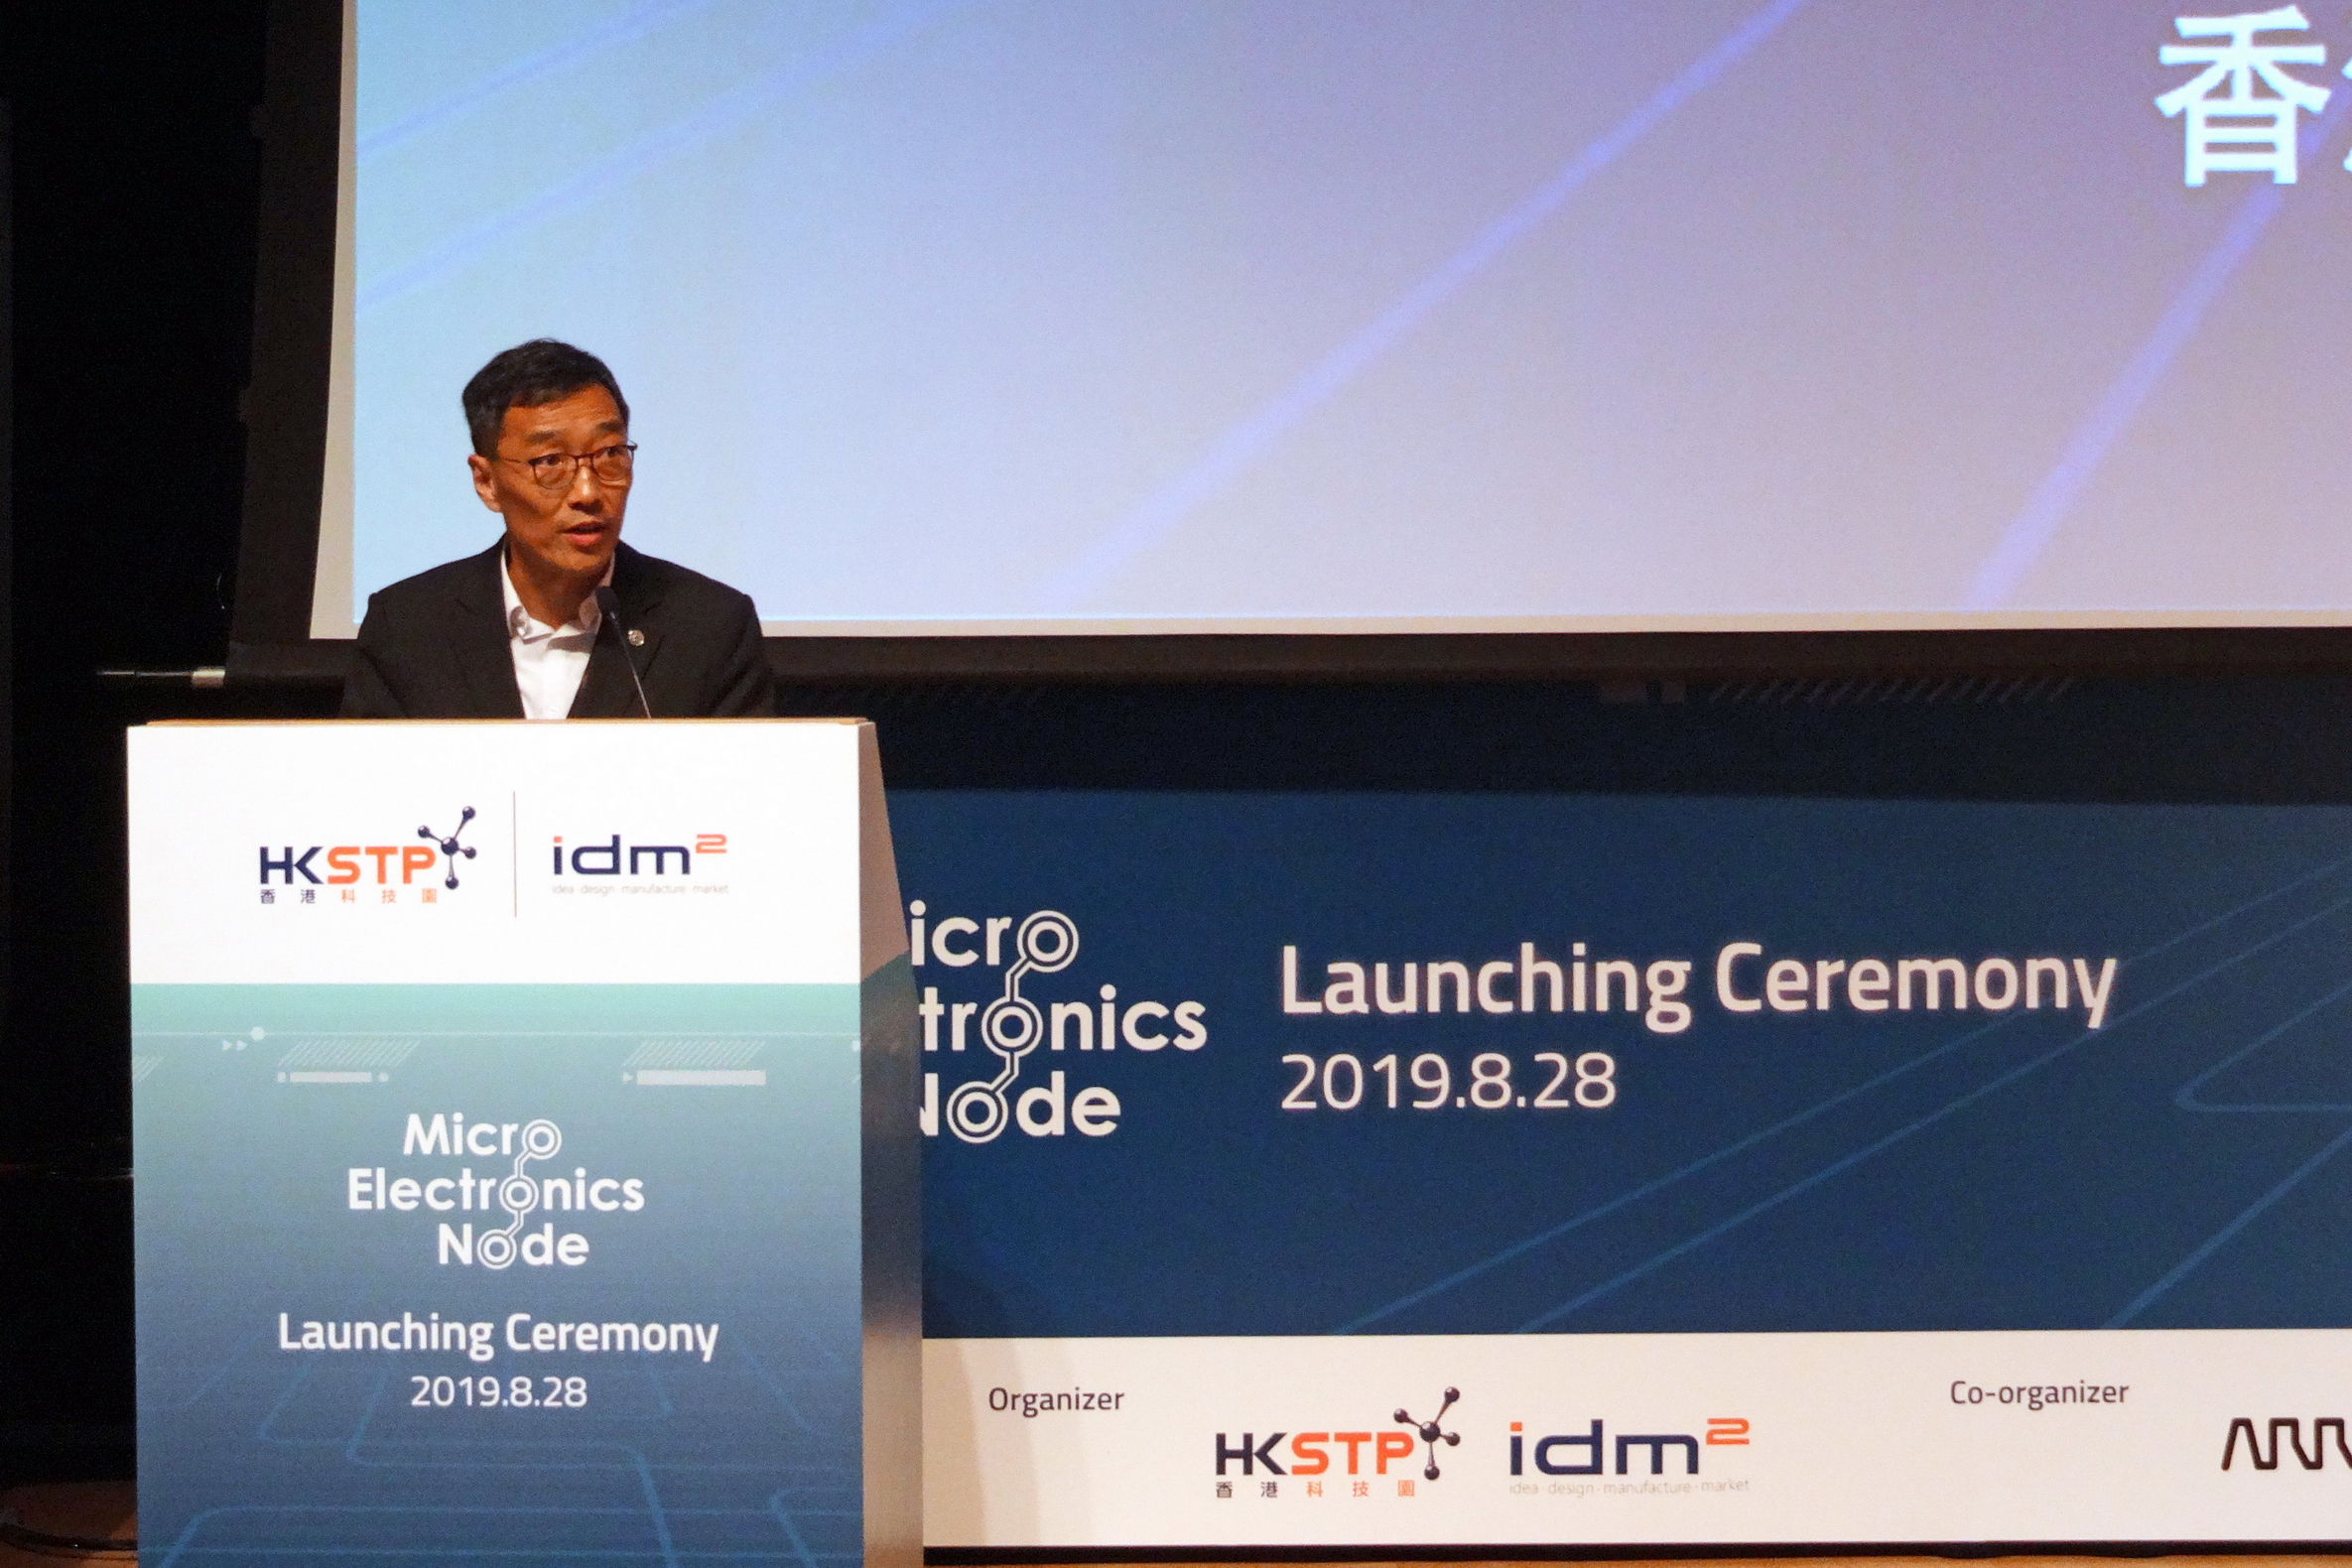 香港科技園公司行政總裁黃克強於計劃啟動儀式上表示，希望透過計劃帶領香港重拾微電子行業的蓬勃發展。